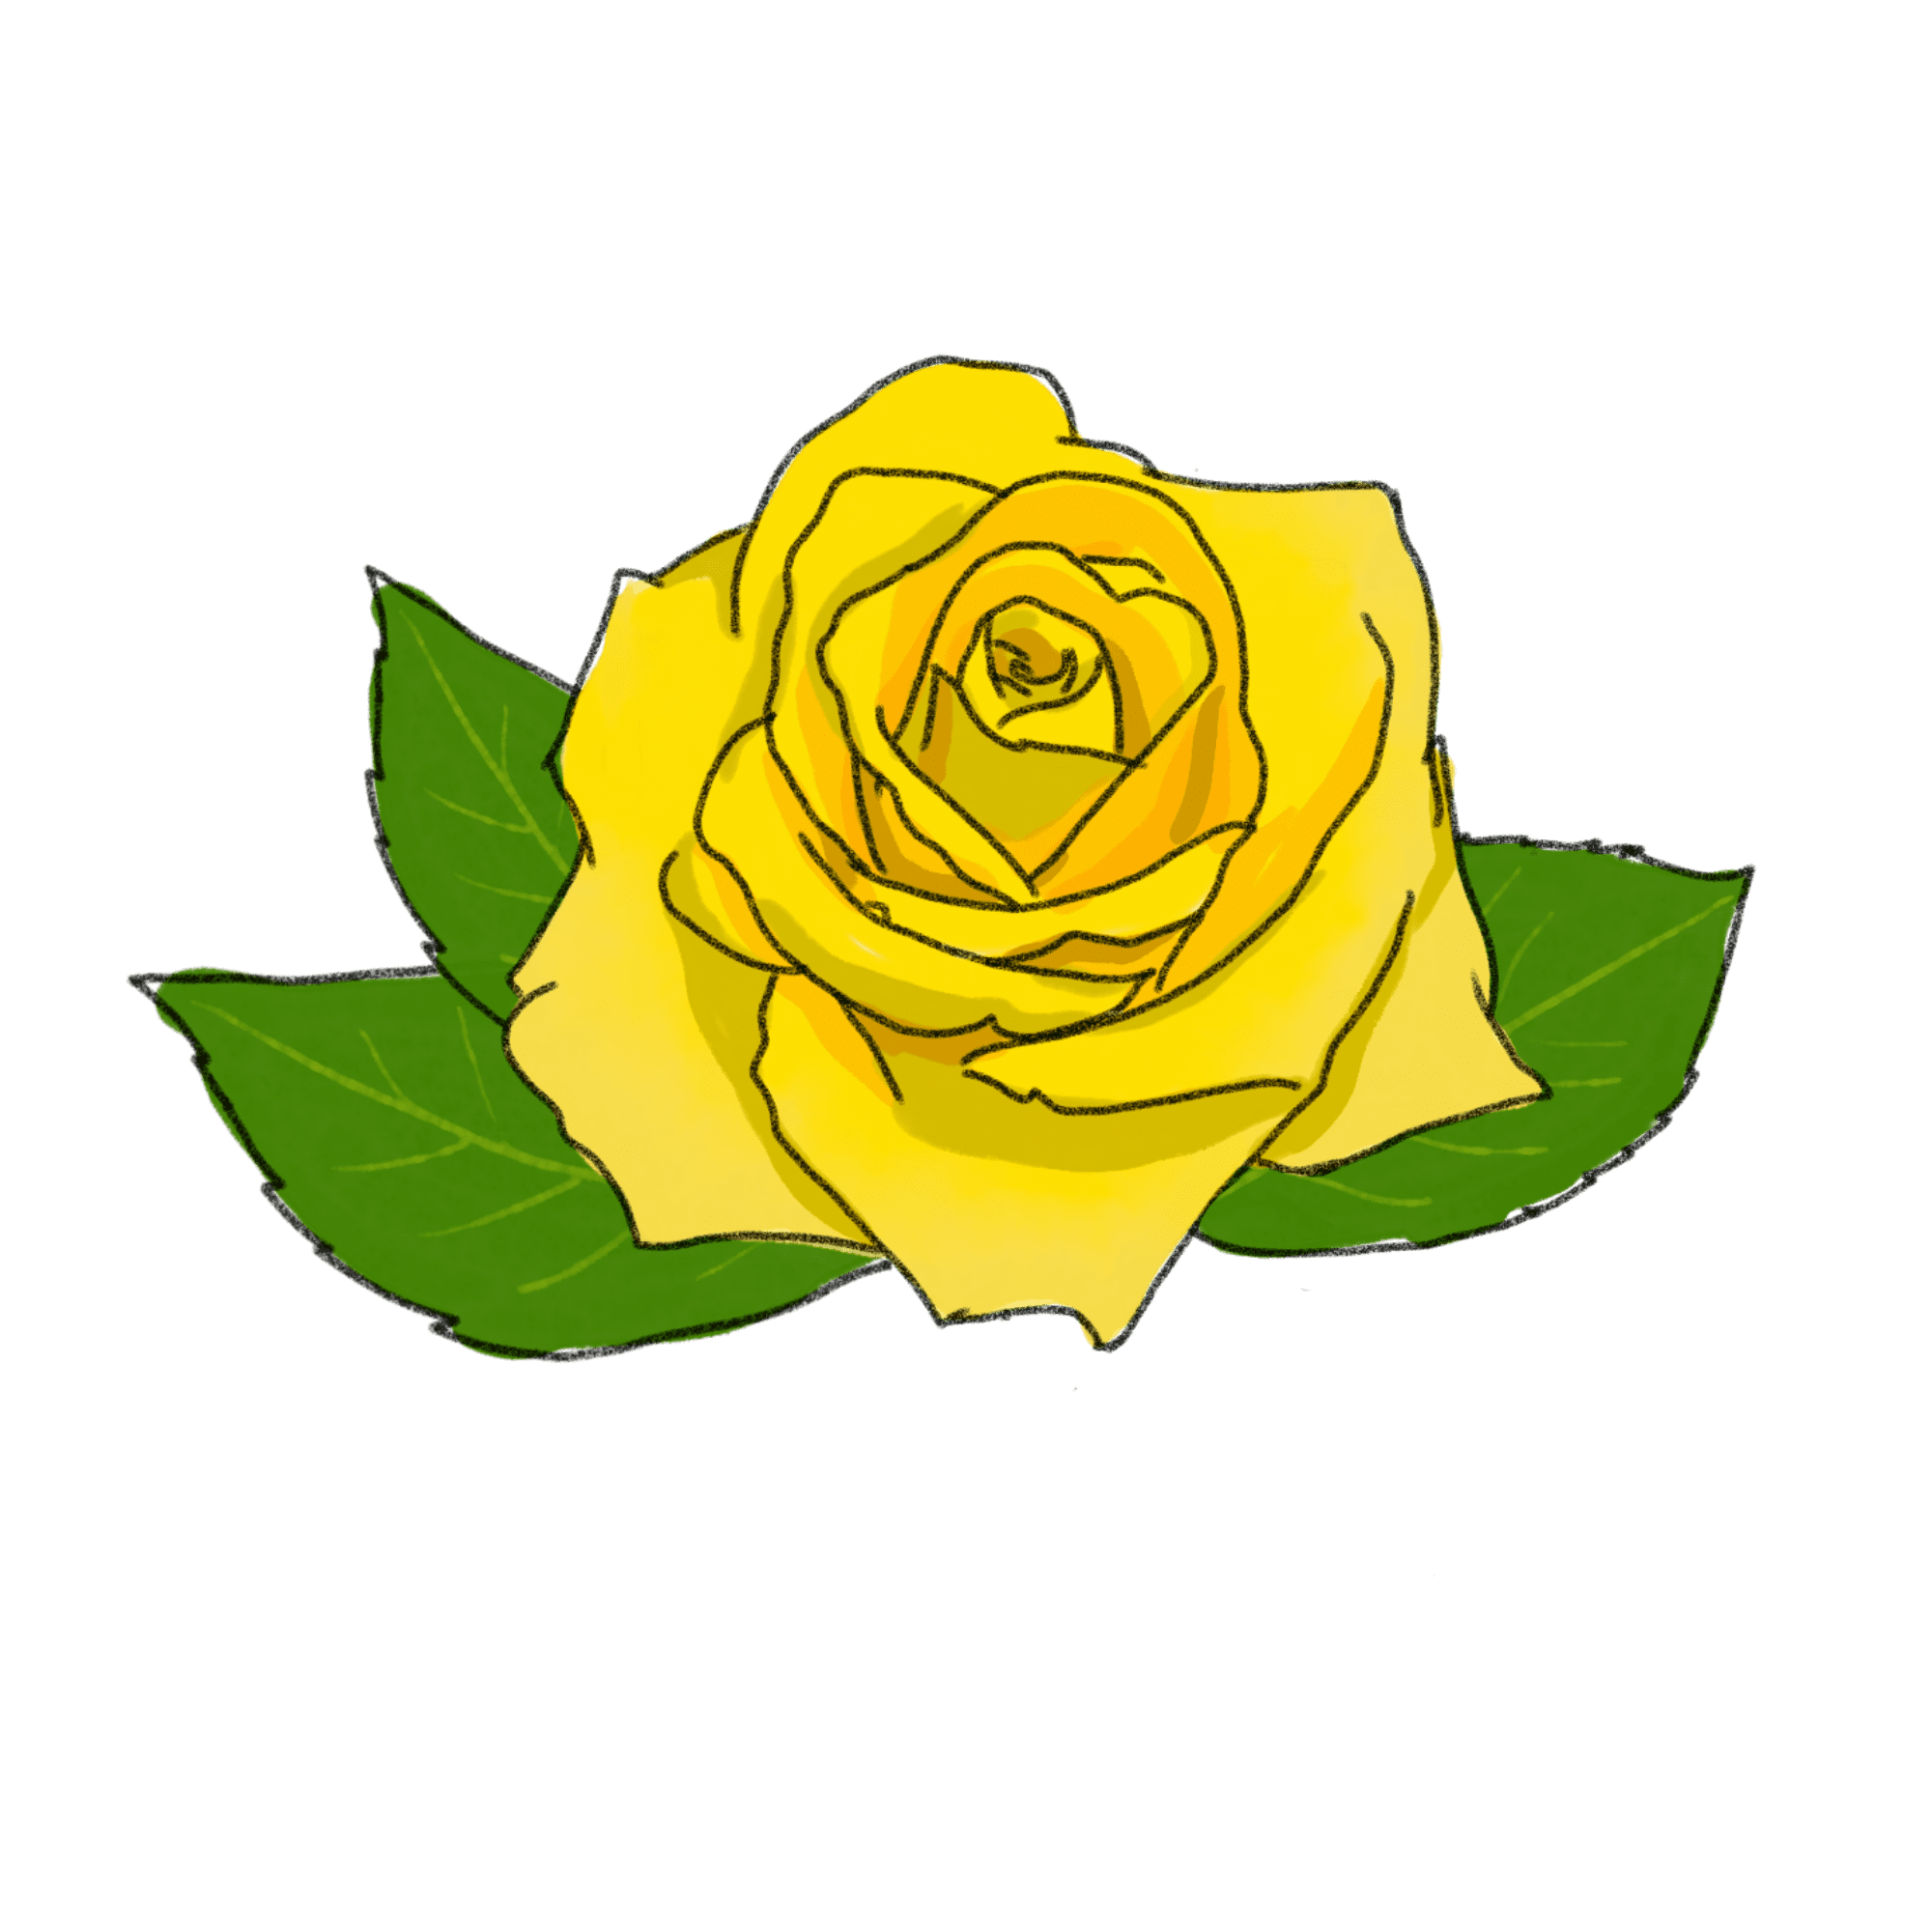 黄色いバラのイラスト 02 フリー素材 Greenstock40